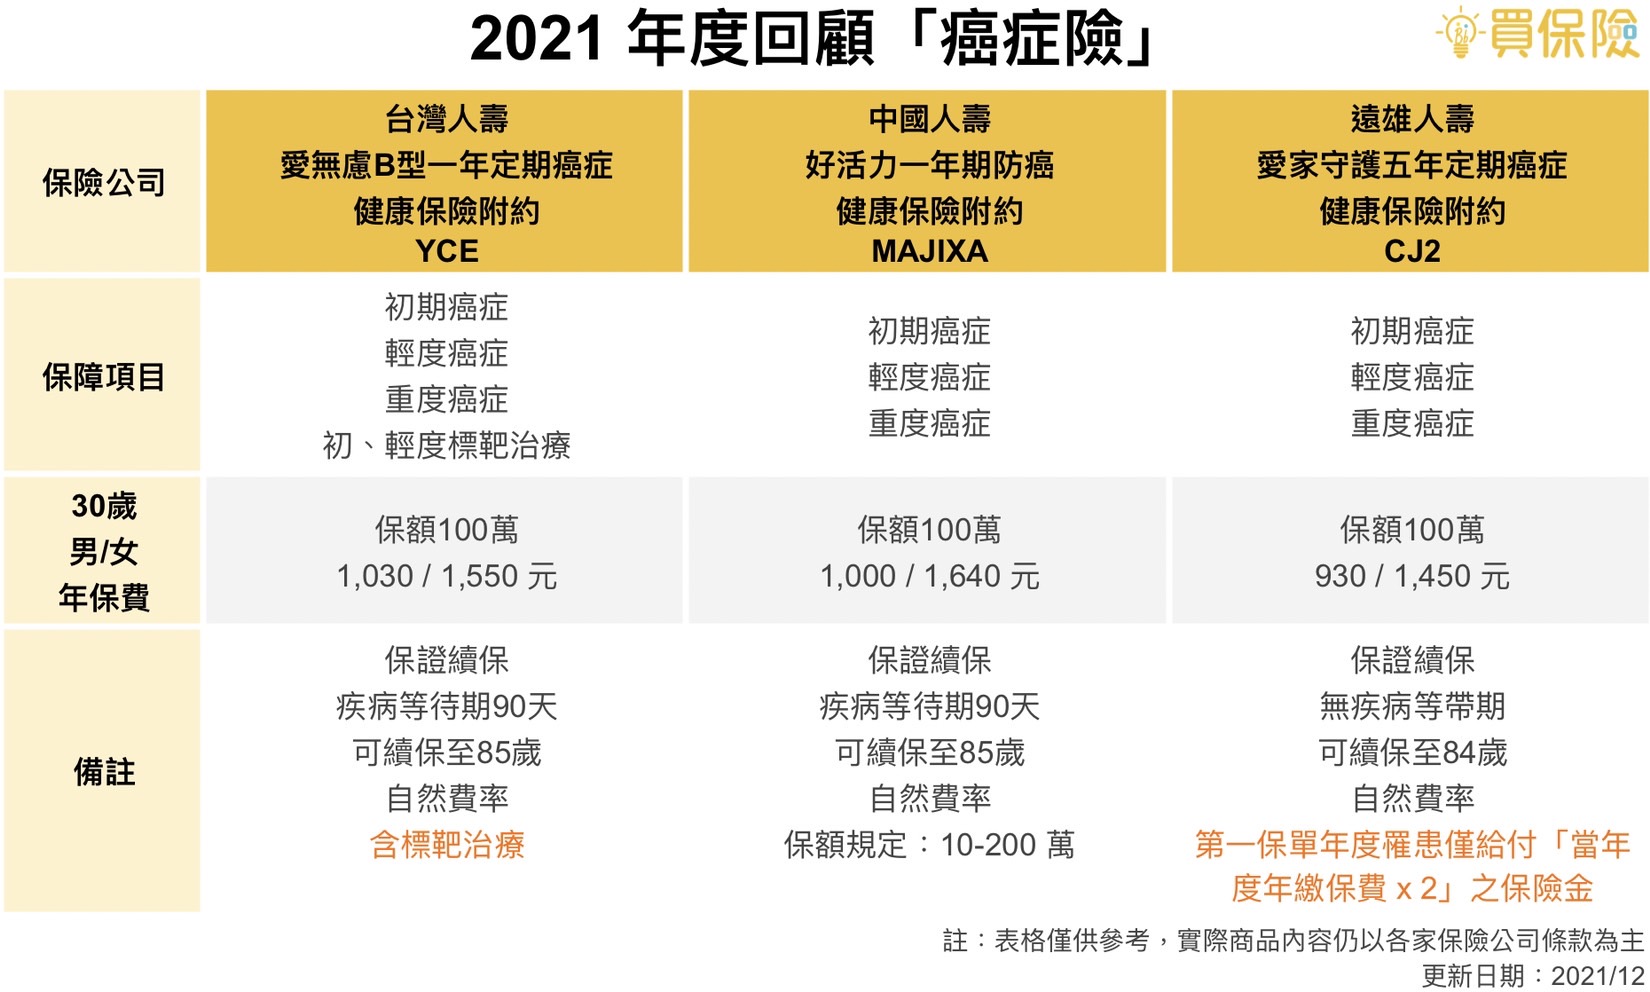 2021年度回顧，網路熱門癌症險商品，台灣人壽YCE、中國人壽MAJIXA、遠雄人壽CJ2